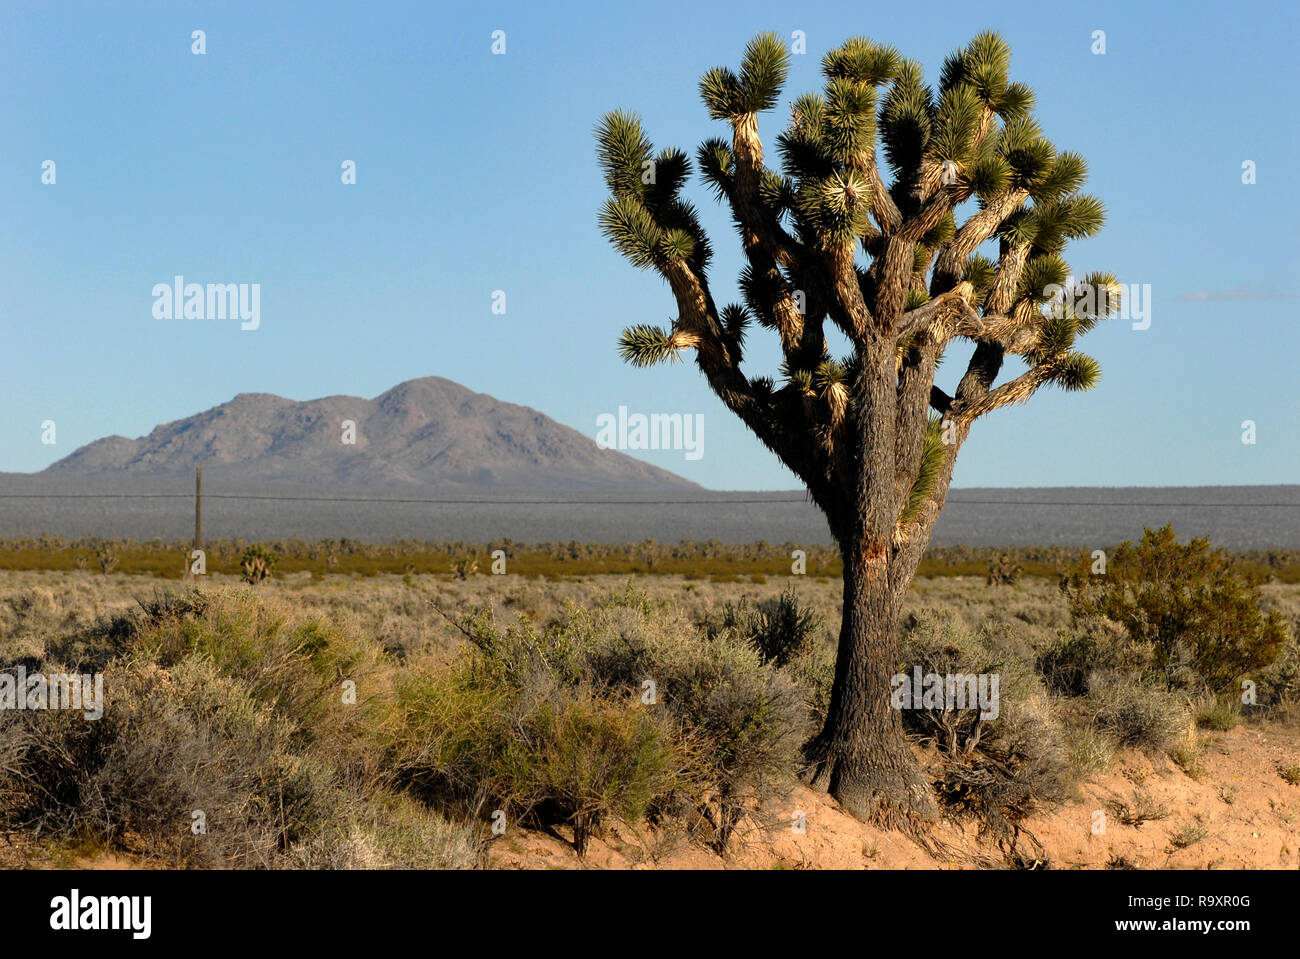 Un Joshua tree et les montagnes sont représentés le long de l'Interstate 15 dans le désert de Mojave, dans le comté de San Bernardino, en Californie, près de la frontière du Nevada. Banque D'Images